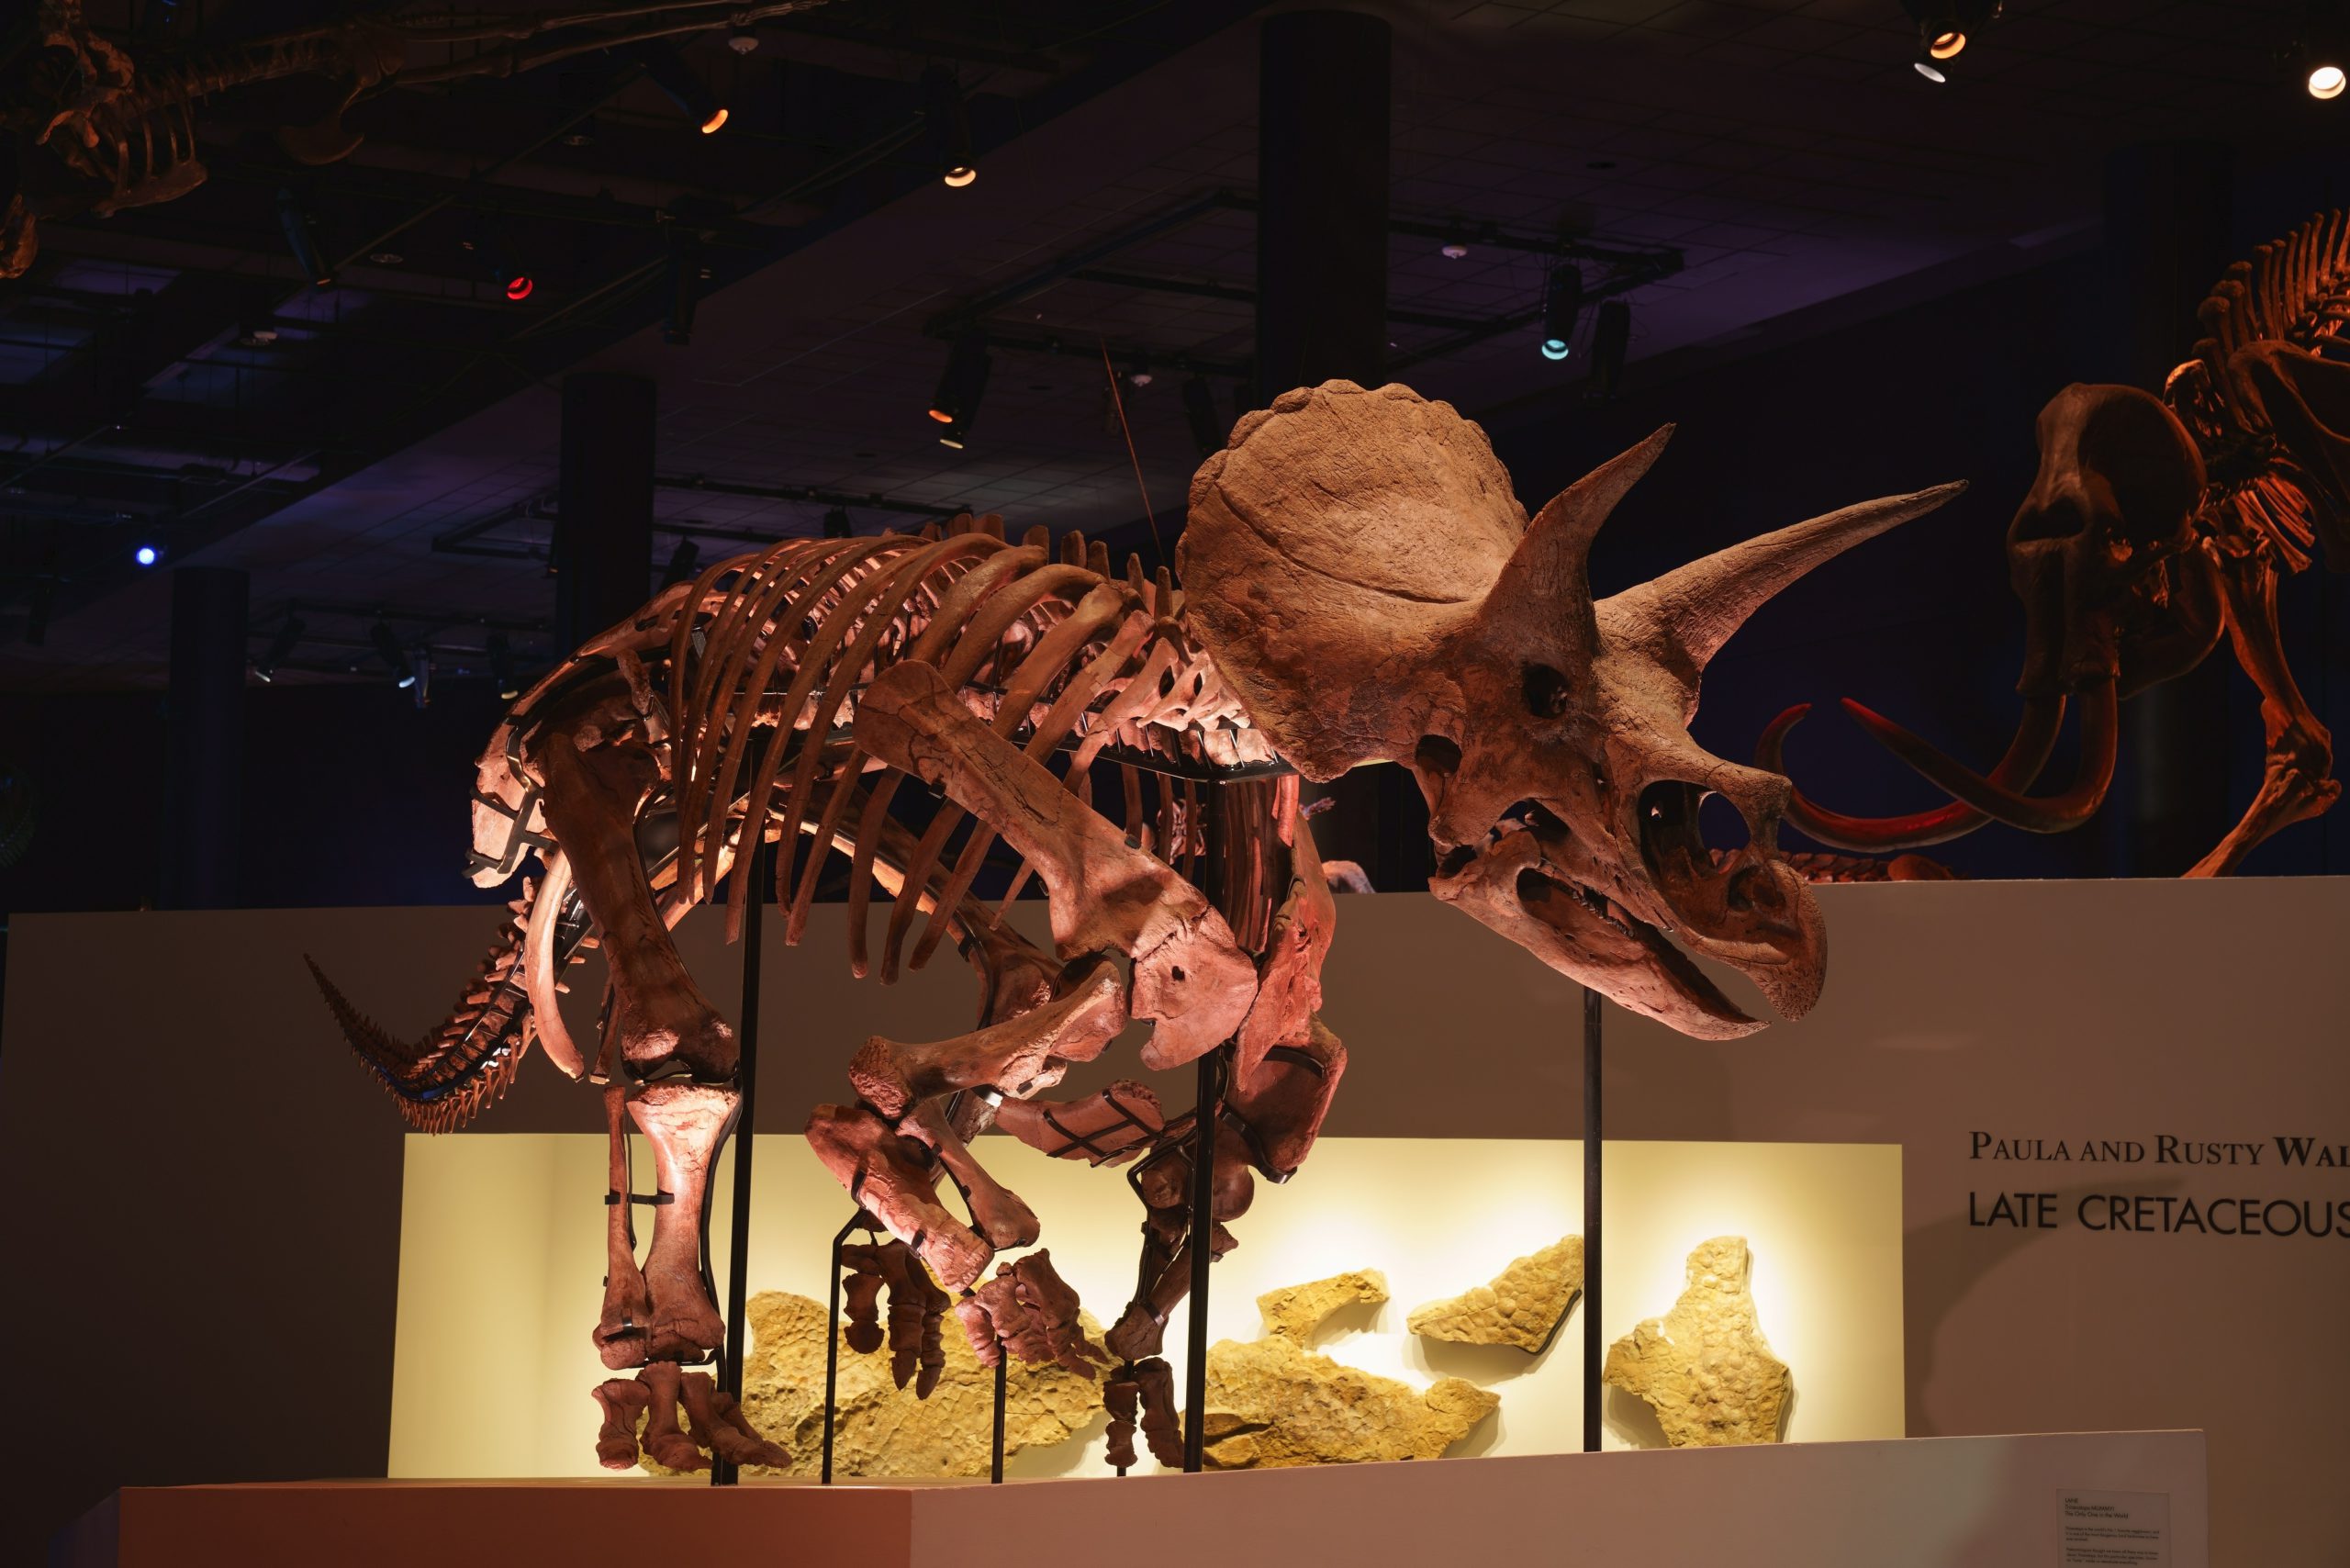 トリケラトプス「レイン」の化石展示。ここまで完全な姿の化石は非常に珍しい。
※ヒューストン自然科学博物館所蔵
